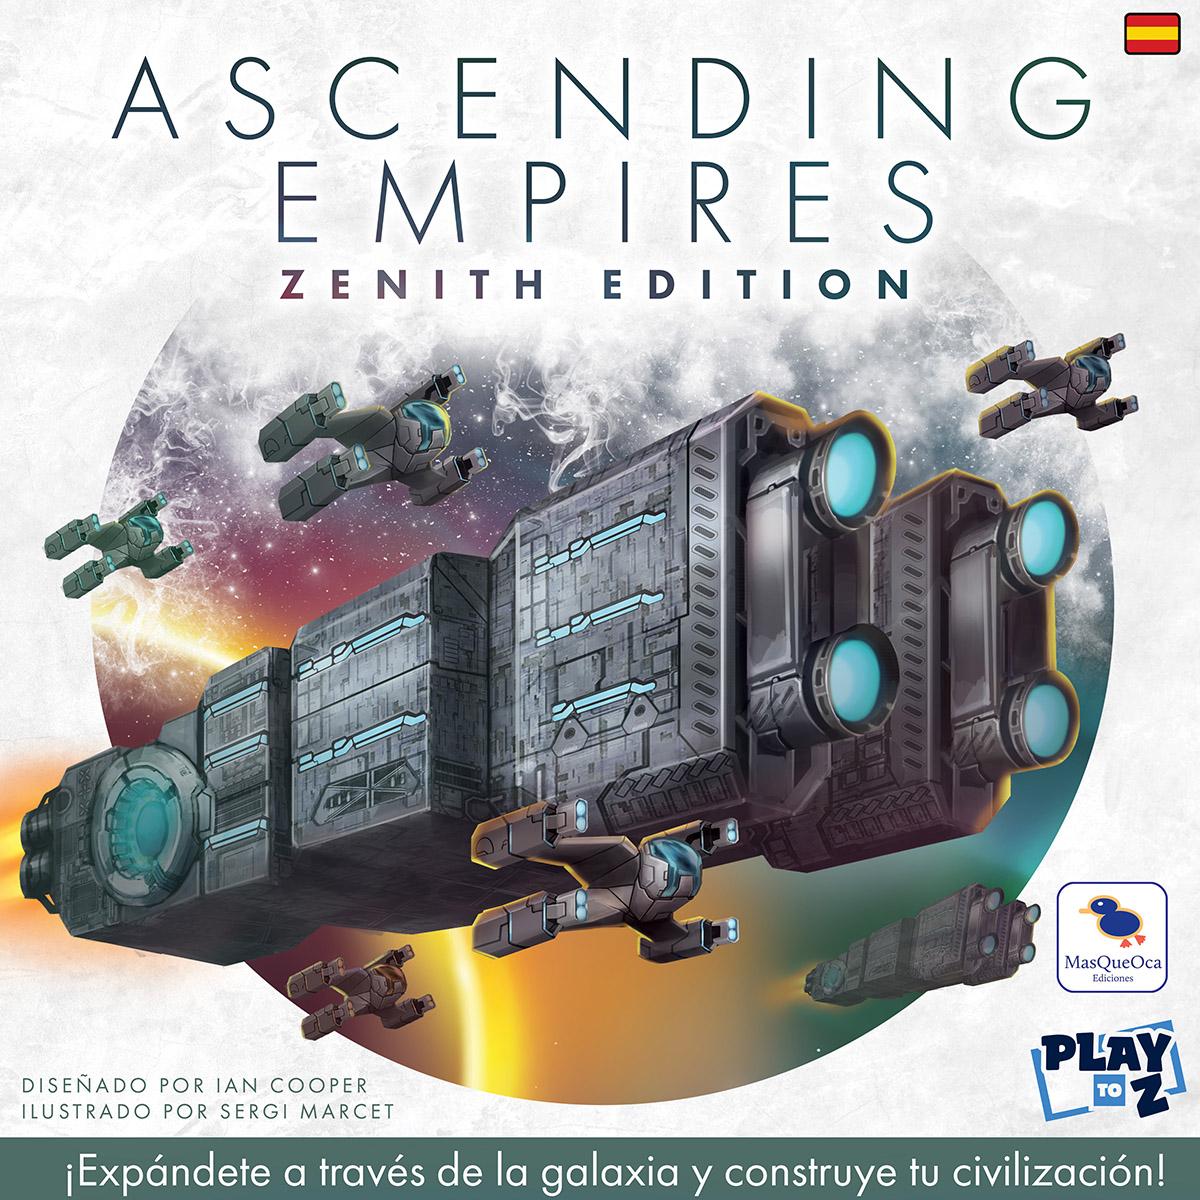 MasQueOca confirma la publicación en español de Ascending Empires: Zenith Edition